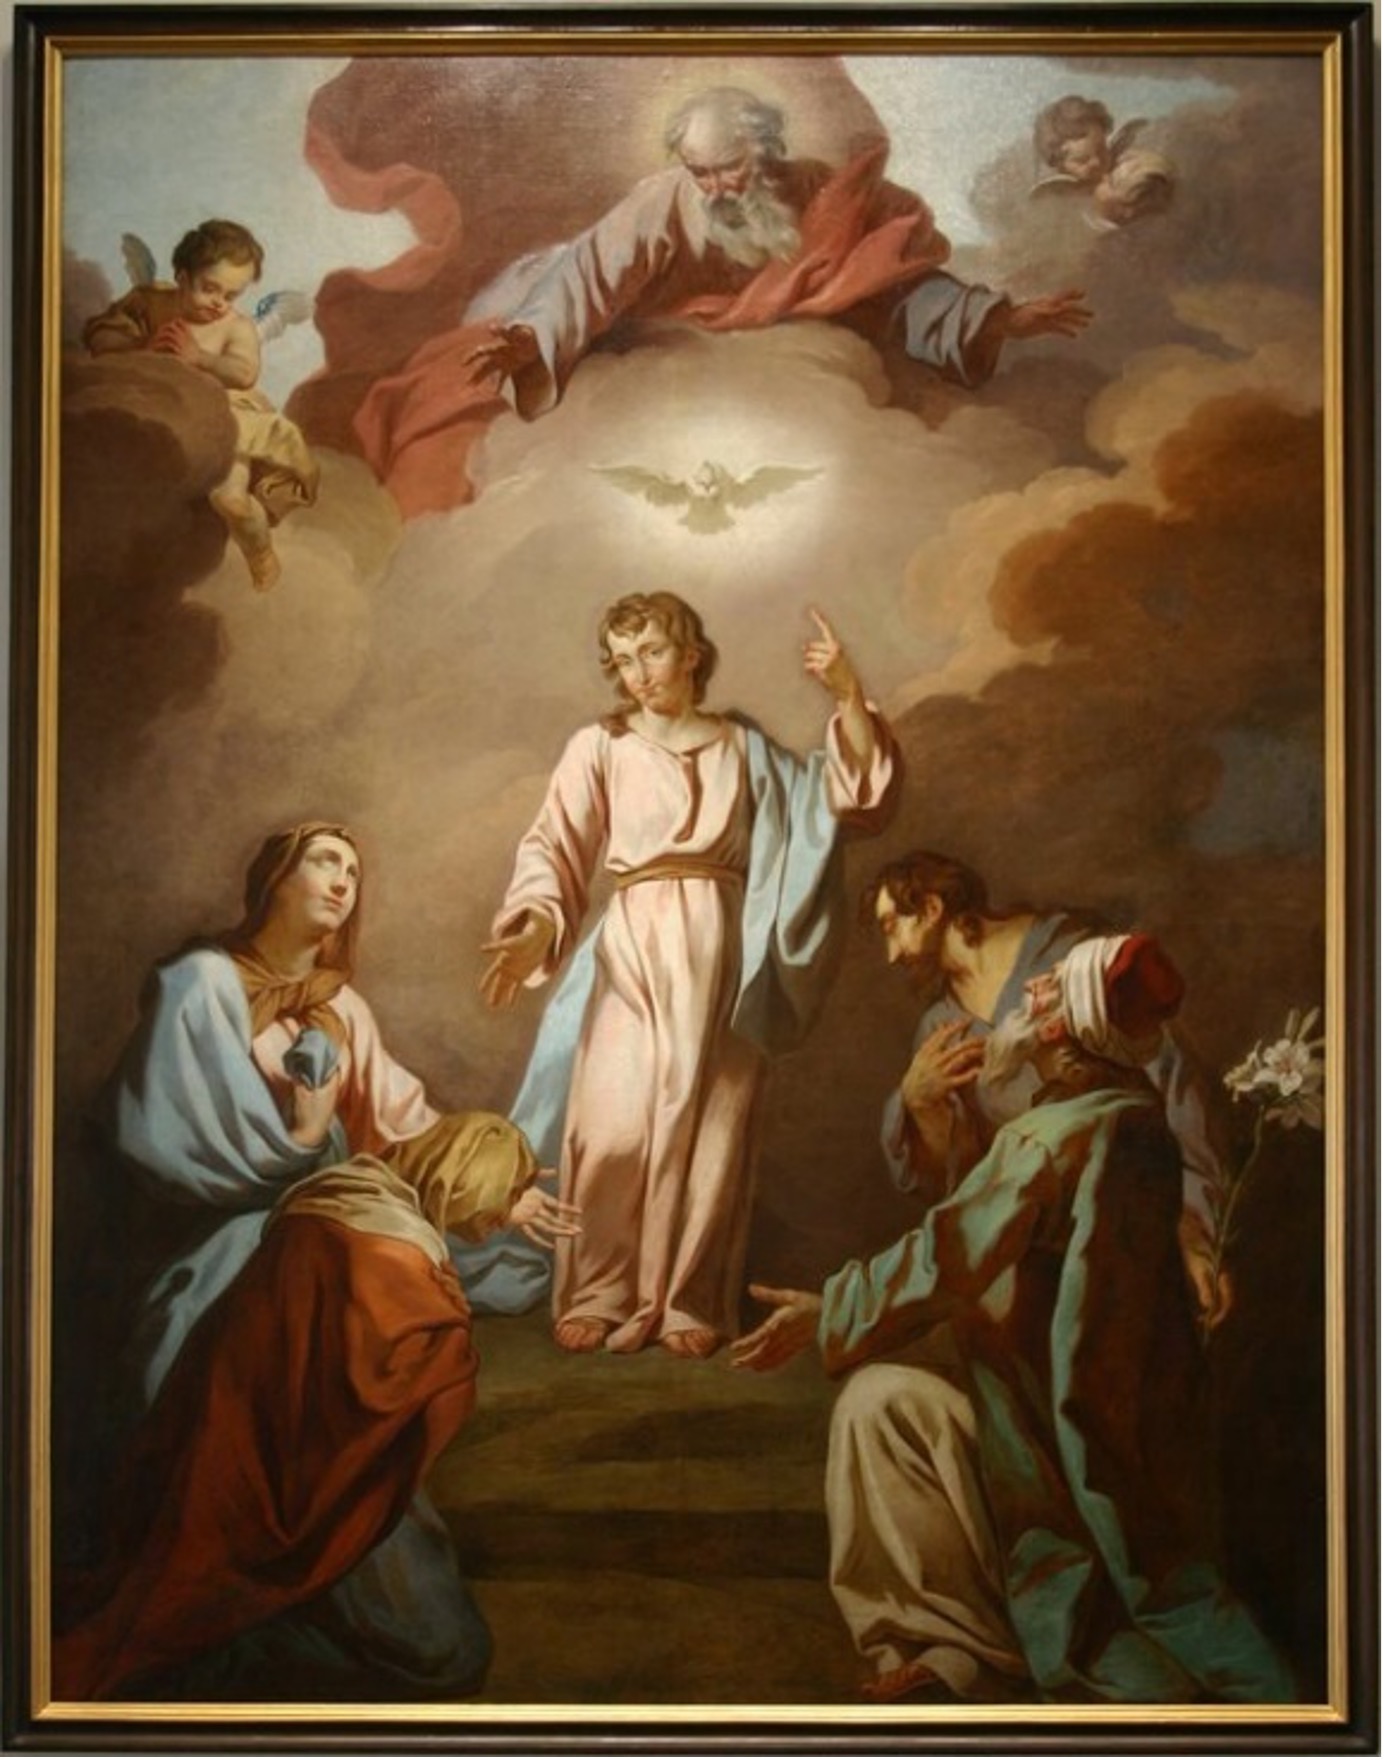 Jean-Charles Frontier, La Sainte Famille trinitaire avec la Vierge Marie, saint Joseph, sainte Anne et saint Joachim, 1749, huile sur toile, PSSM.